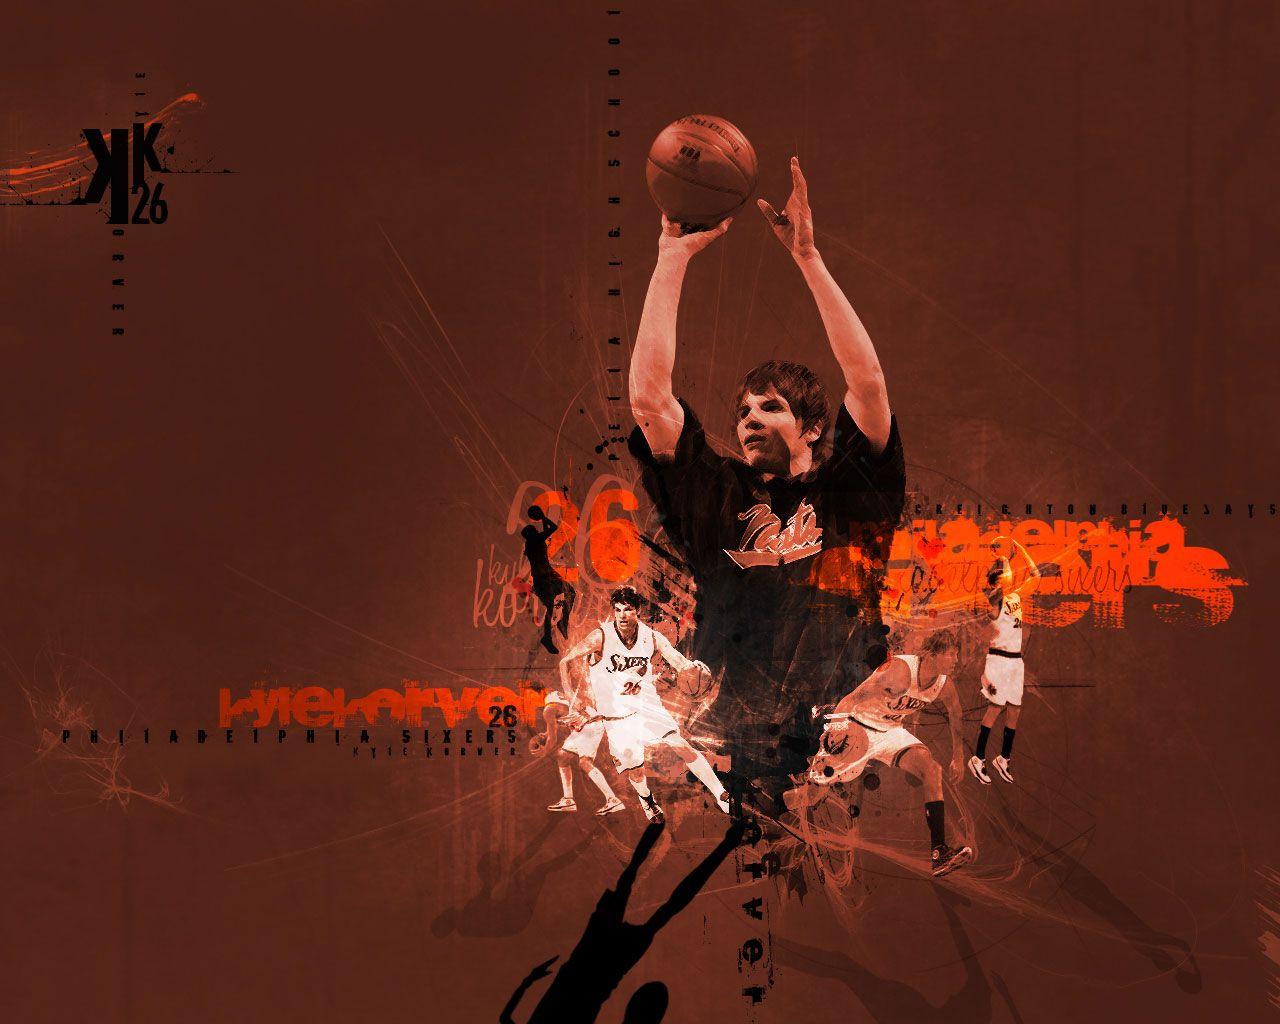 Kyle Korver 76ers Wallpaper. Basketball Wallpaper at